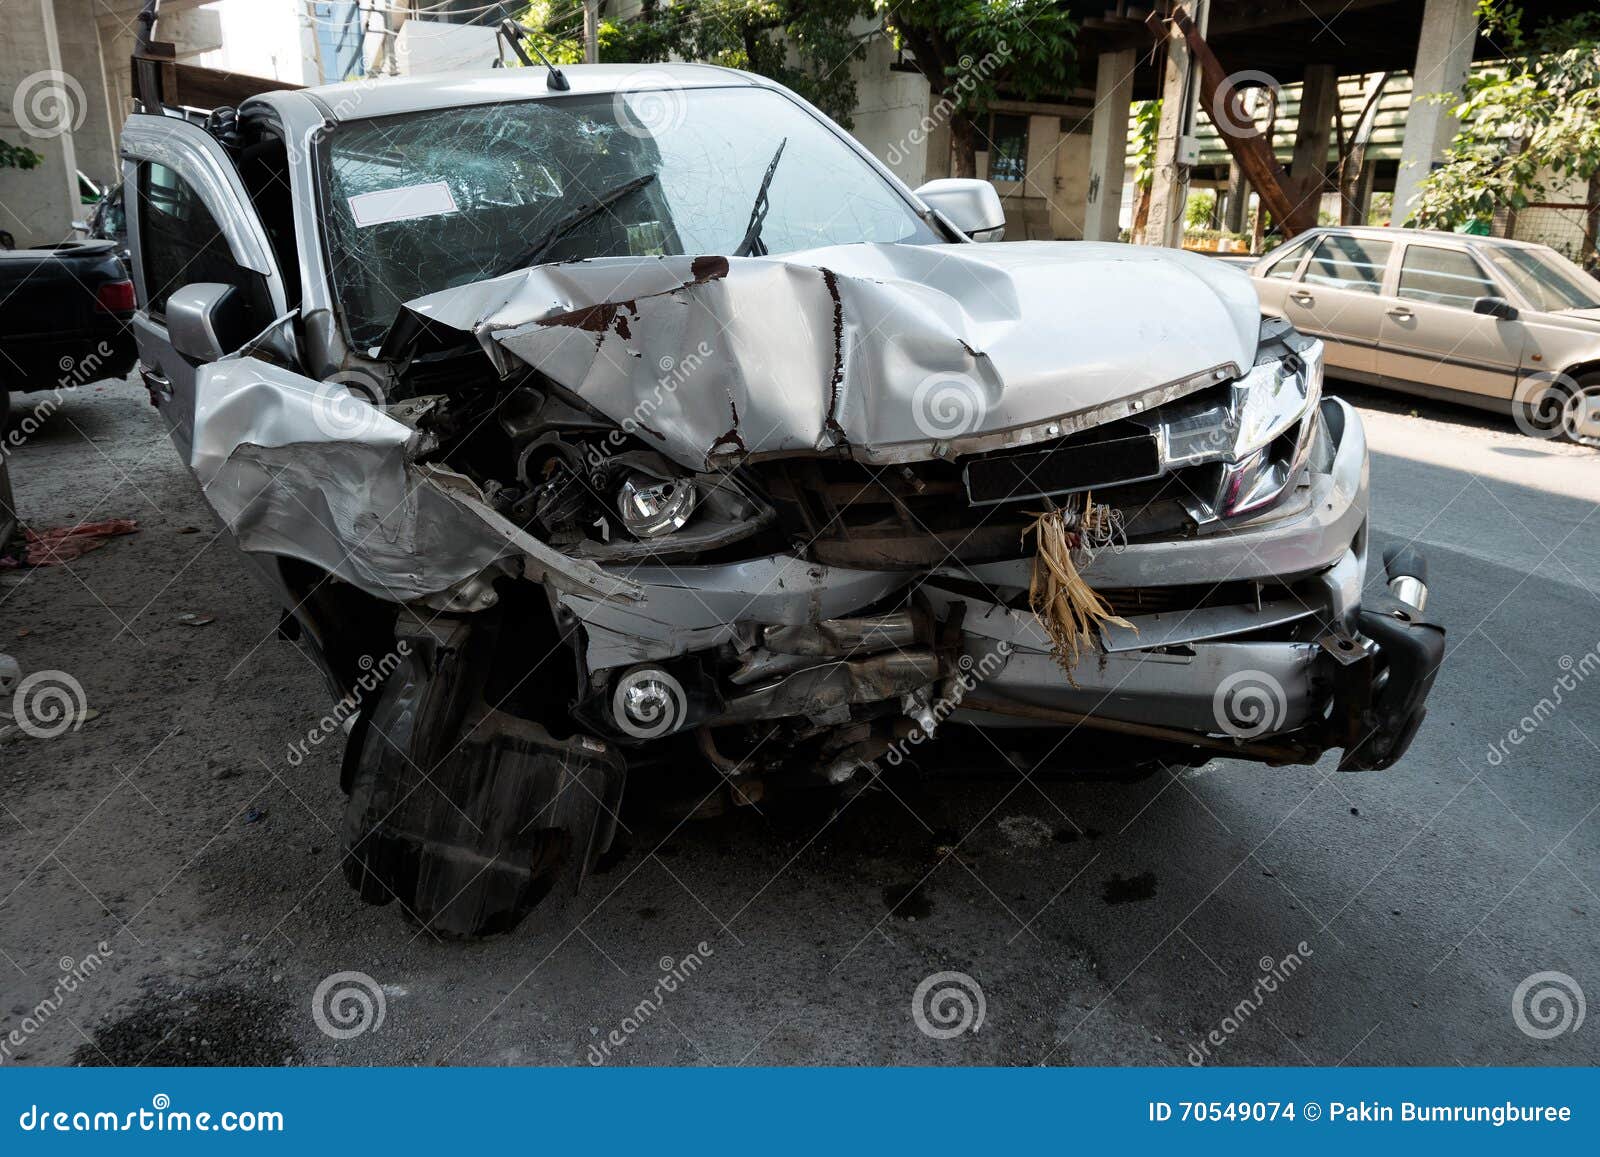 道路上的皮卡事故，泰国国家公园的车祸高清摄影大图-千库网